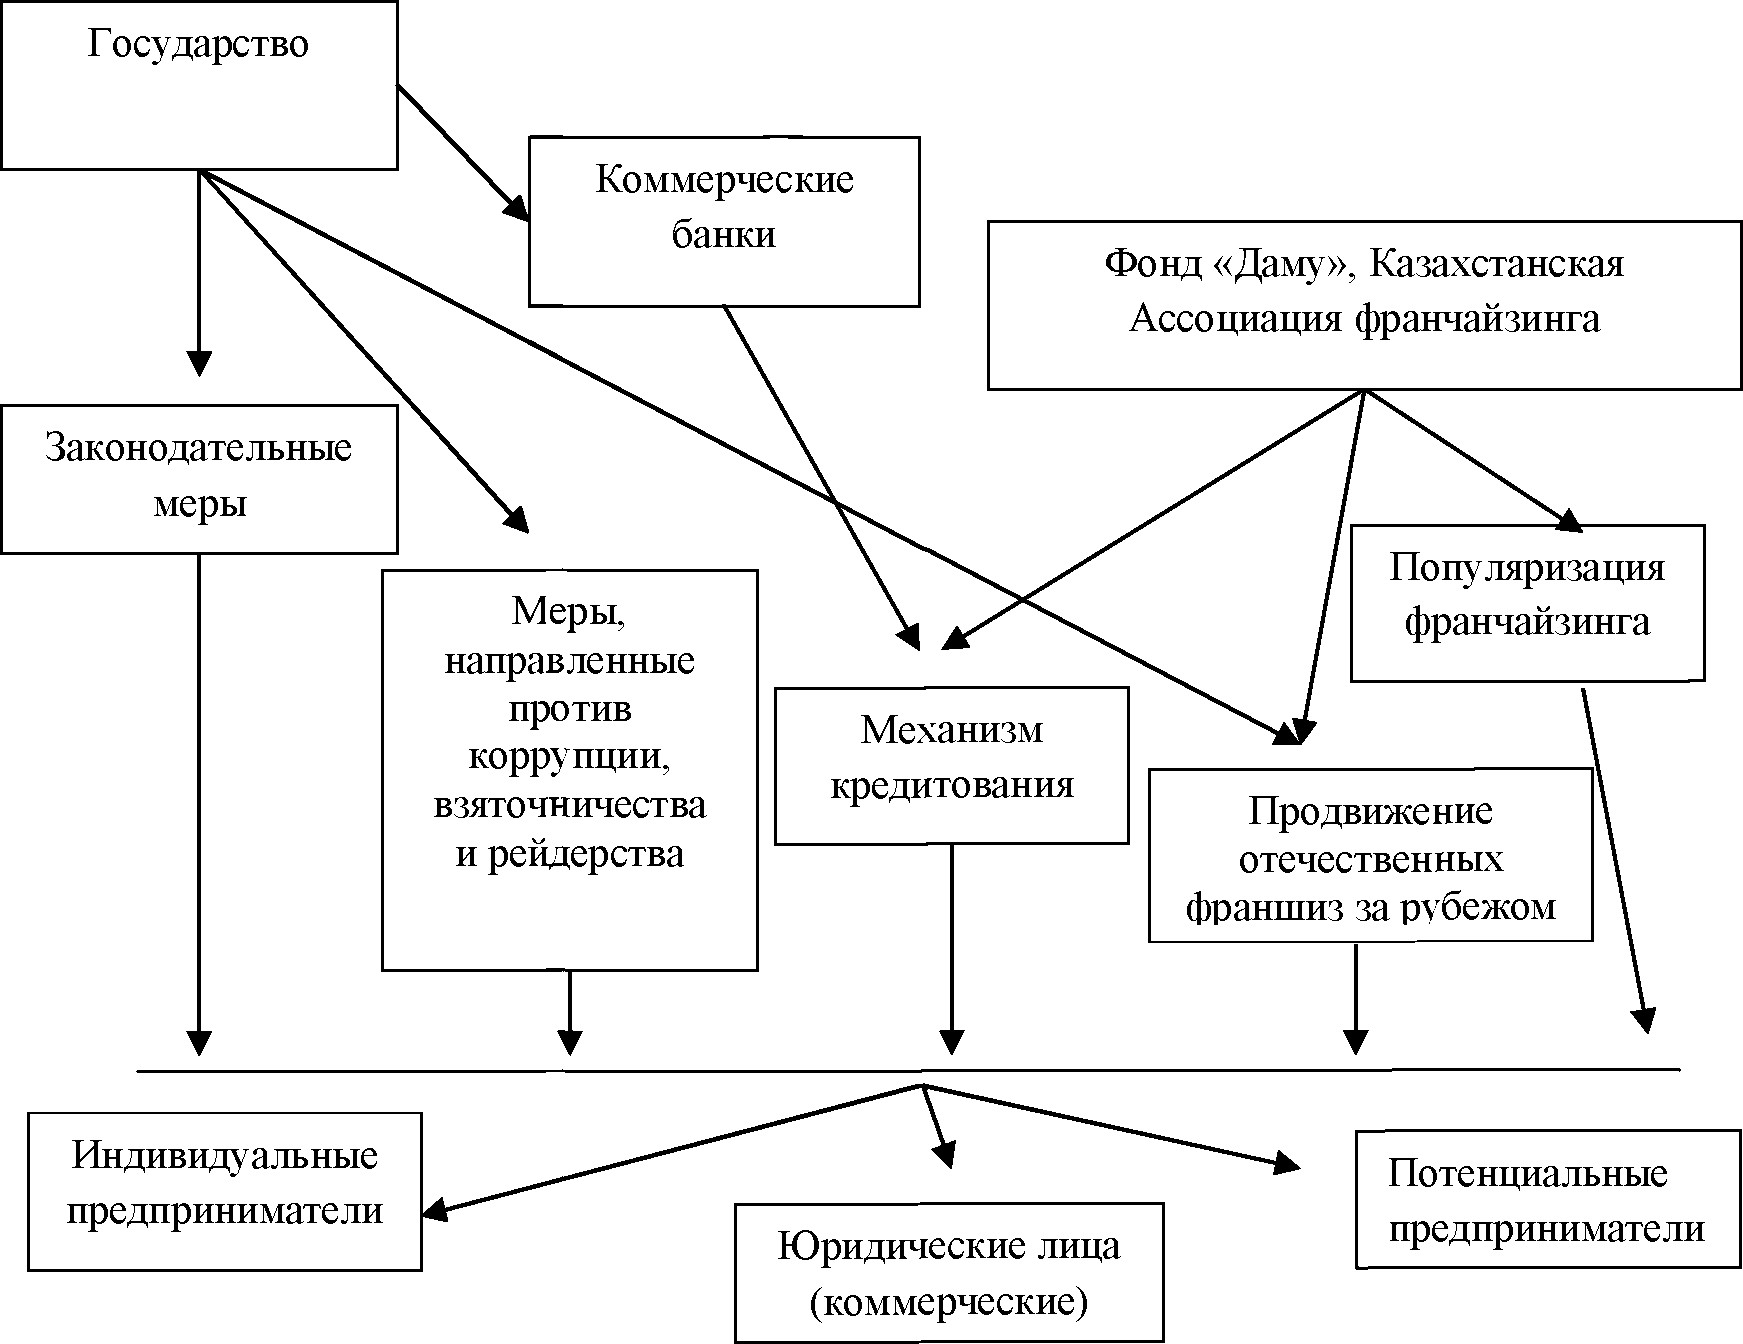 Модель развития рынка франчайзинга в республике Казахстан